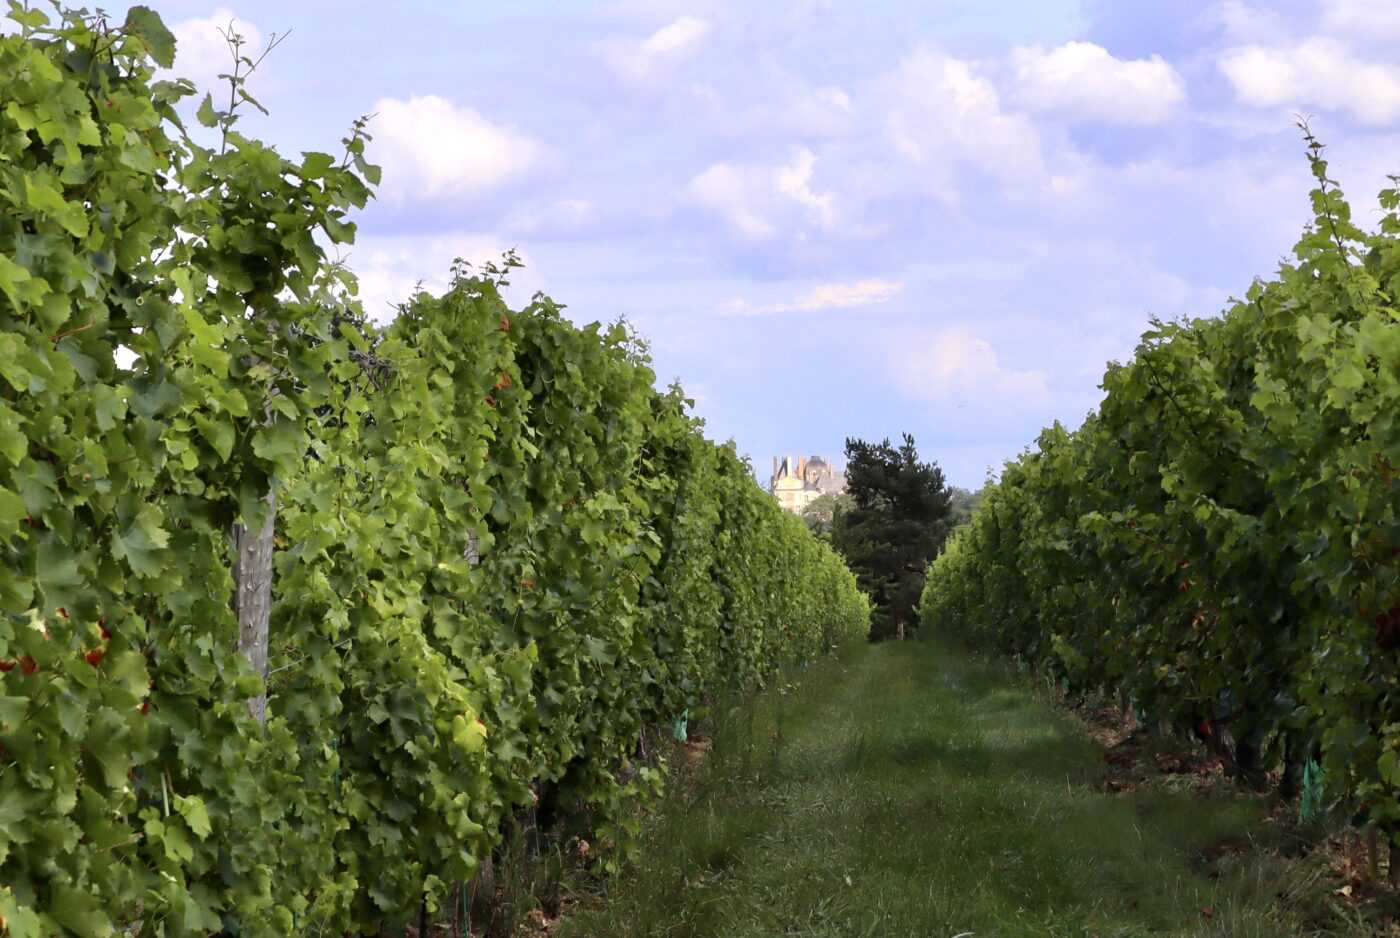 Vineyard in Loire, France